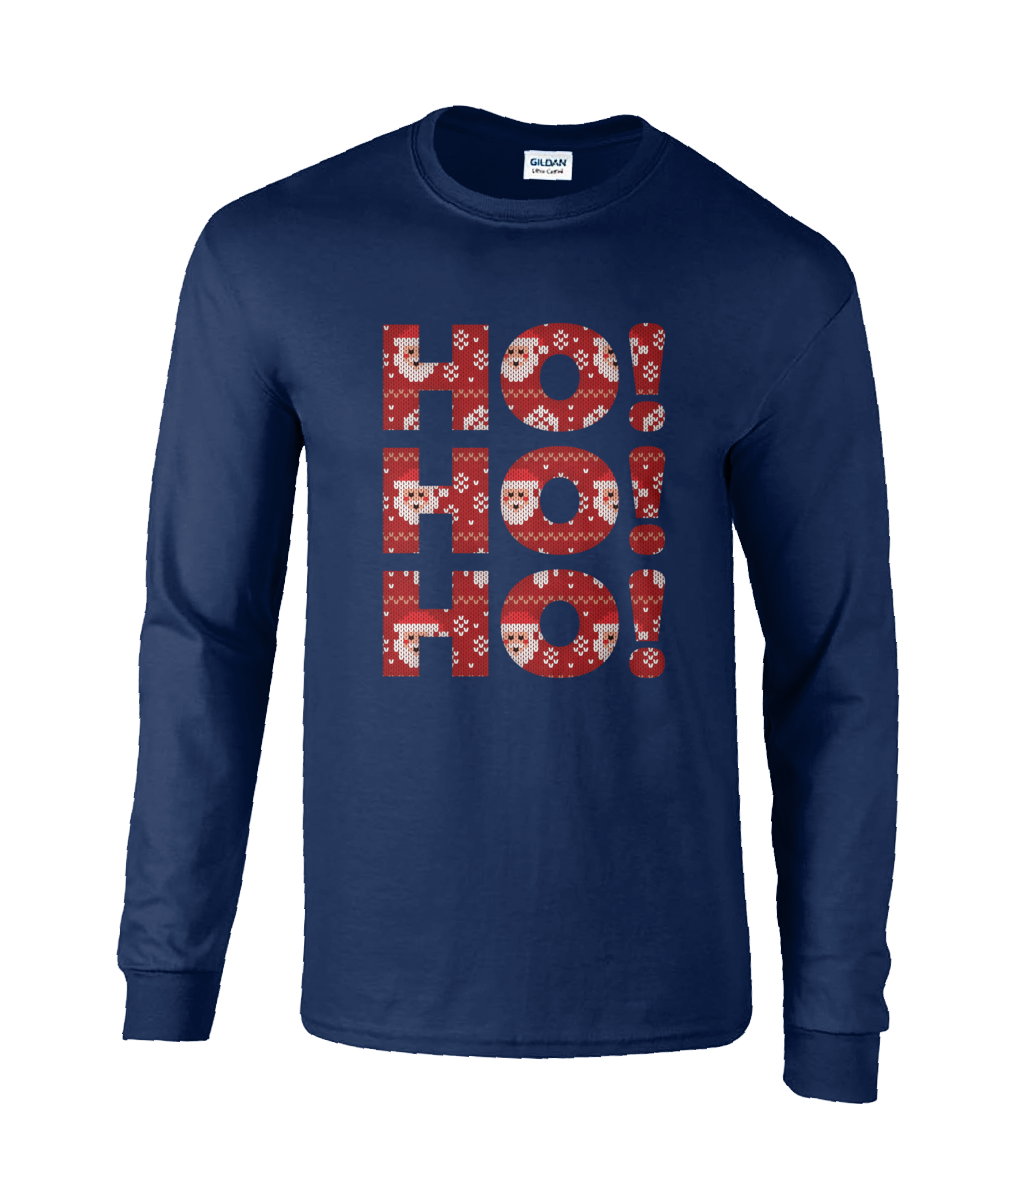 Long Sleeve T shirt - Christmas "Ho! Ho! Ho!"